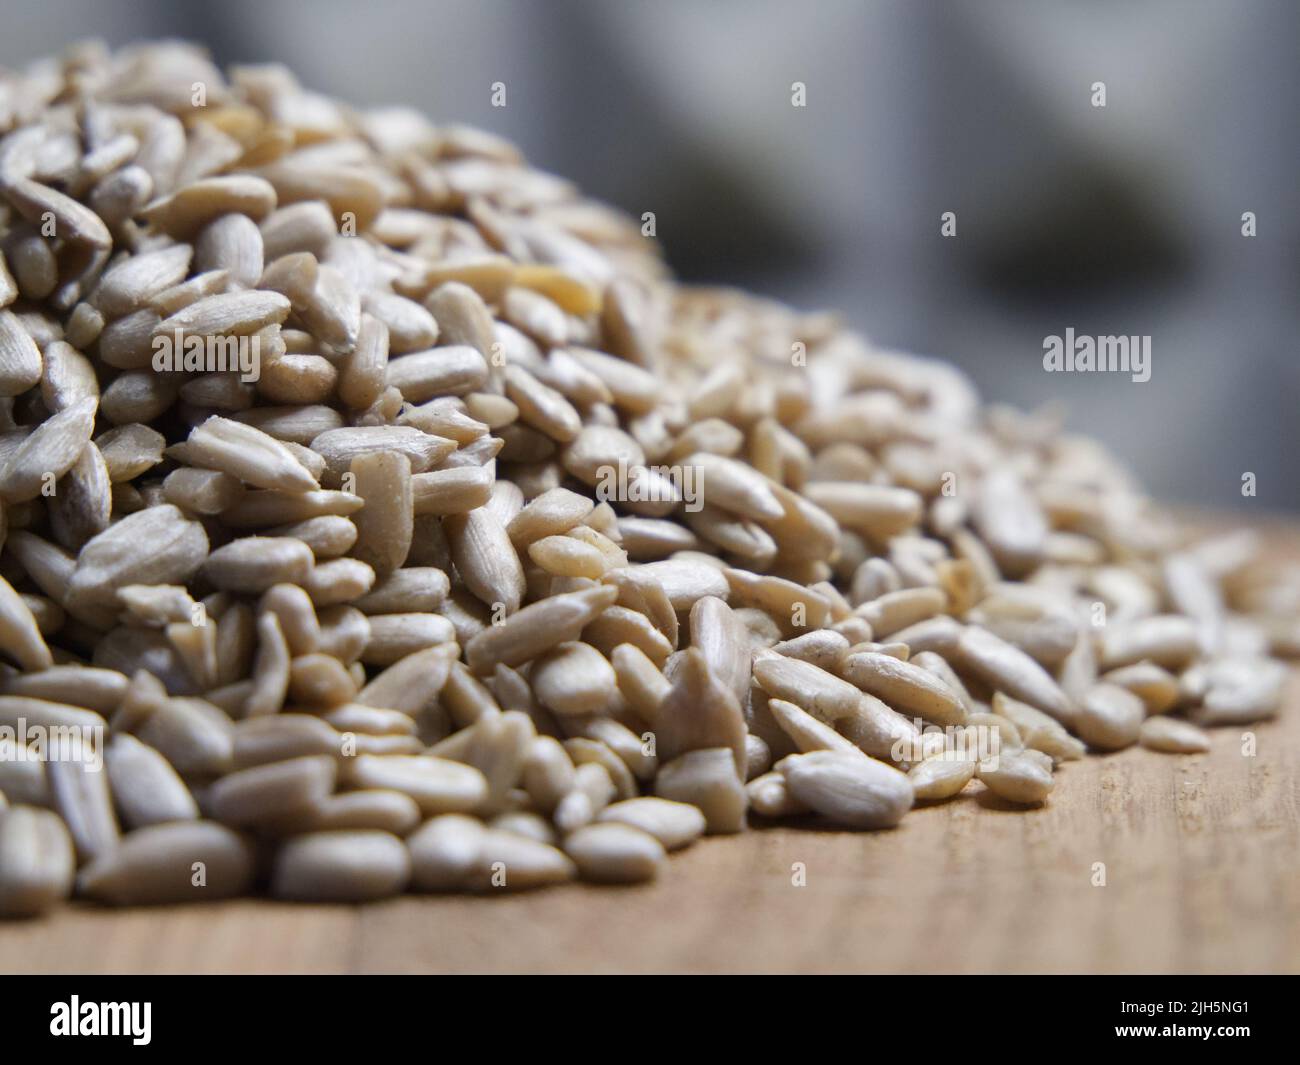 Un montón de semillas de girasol peladas sobre una superficie de madera, primer plano. Semillas sin cáscara. Foto de stock